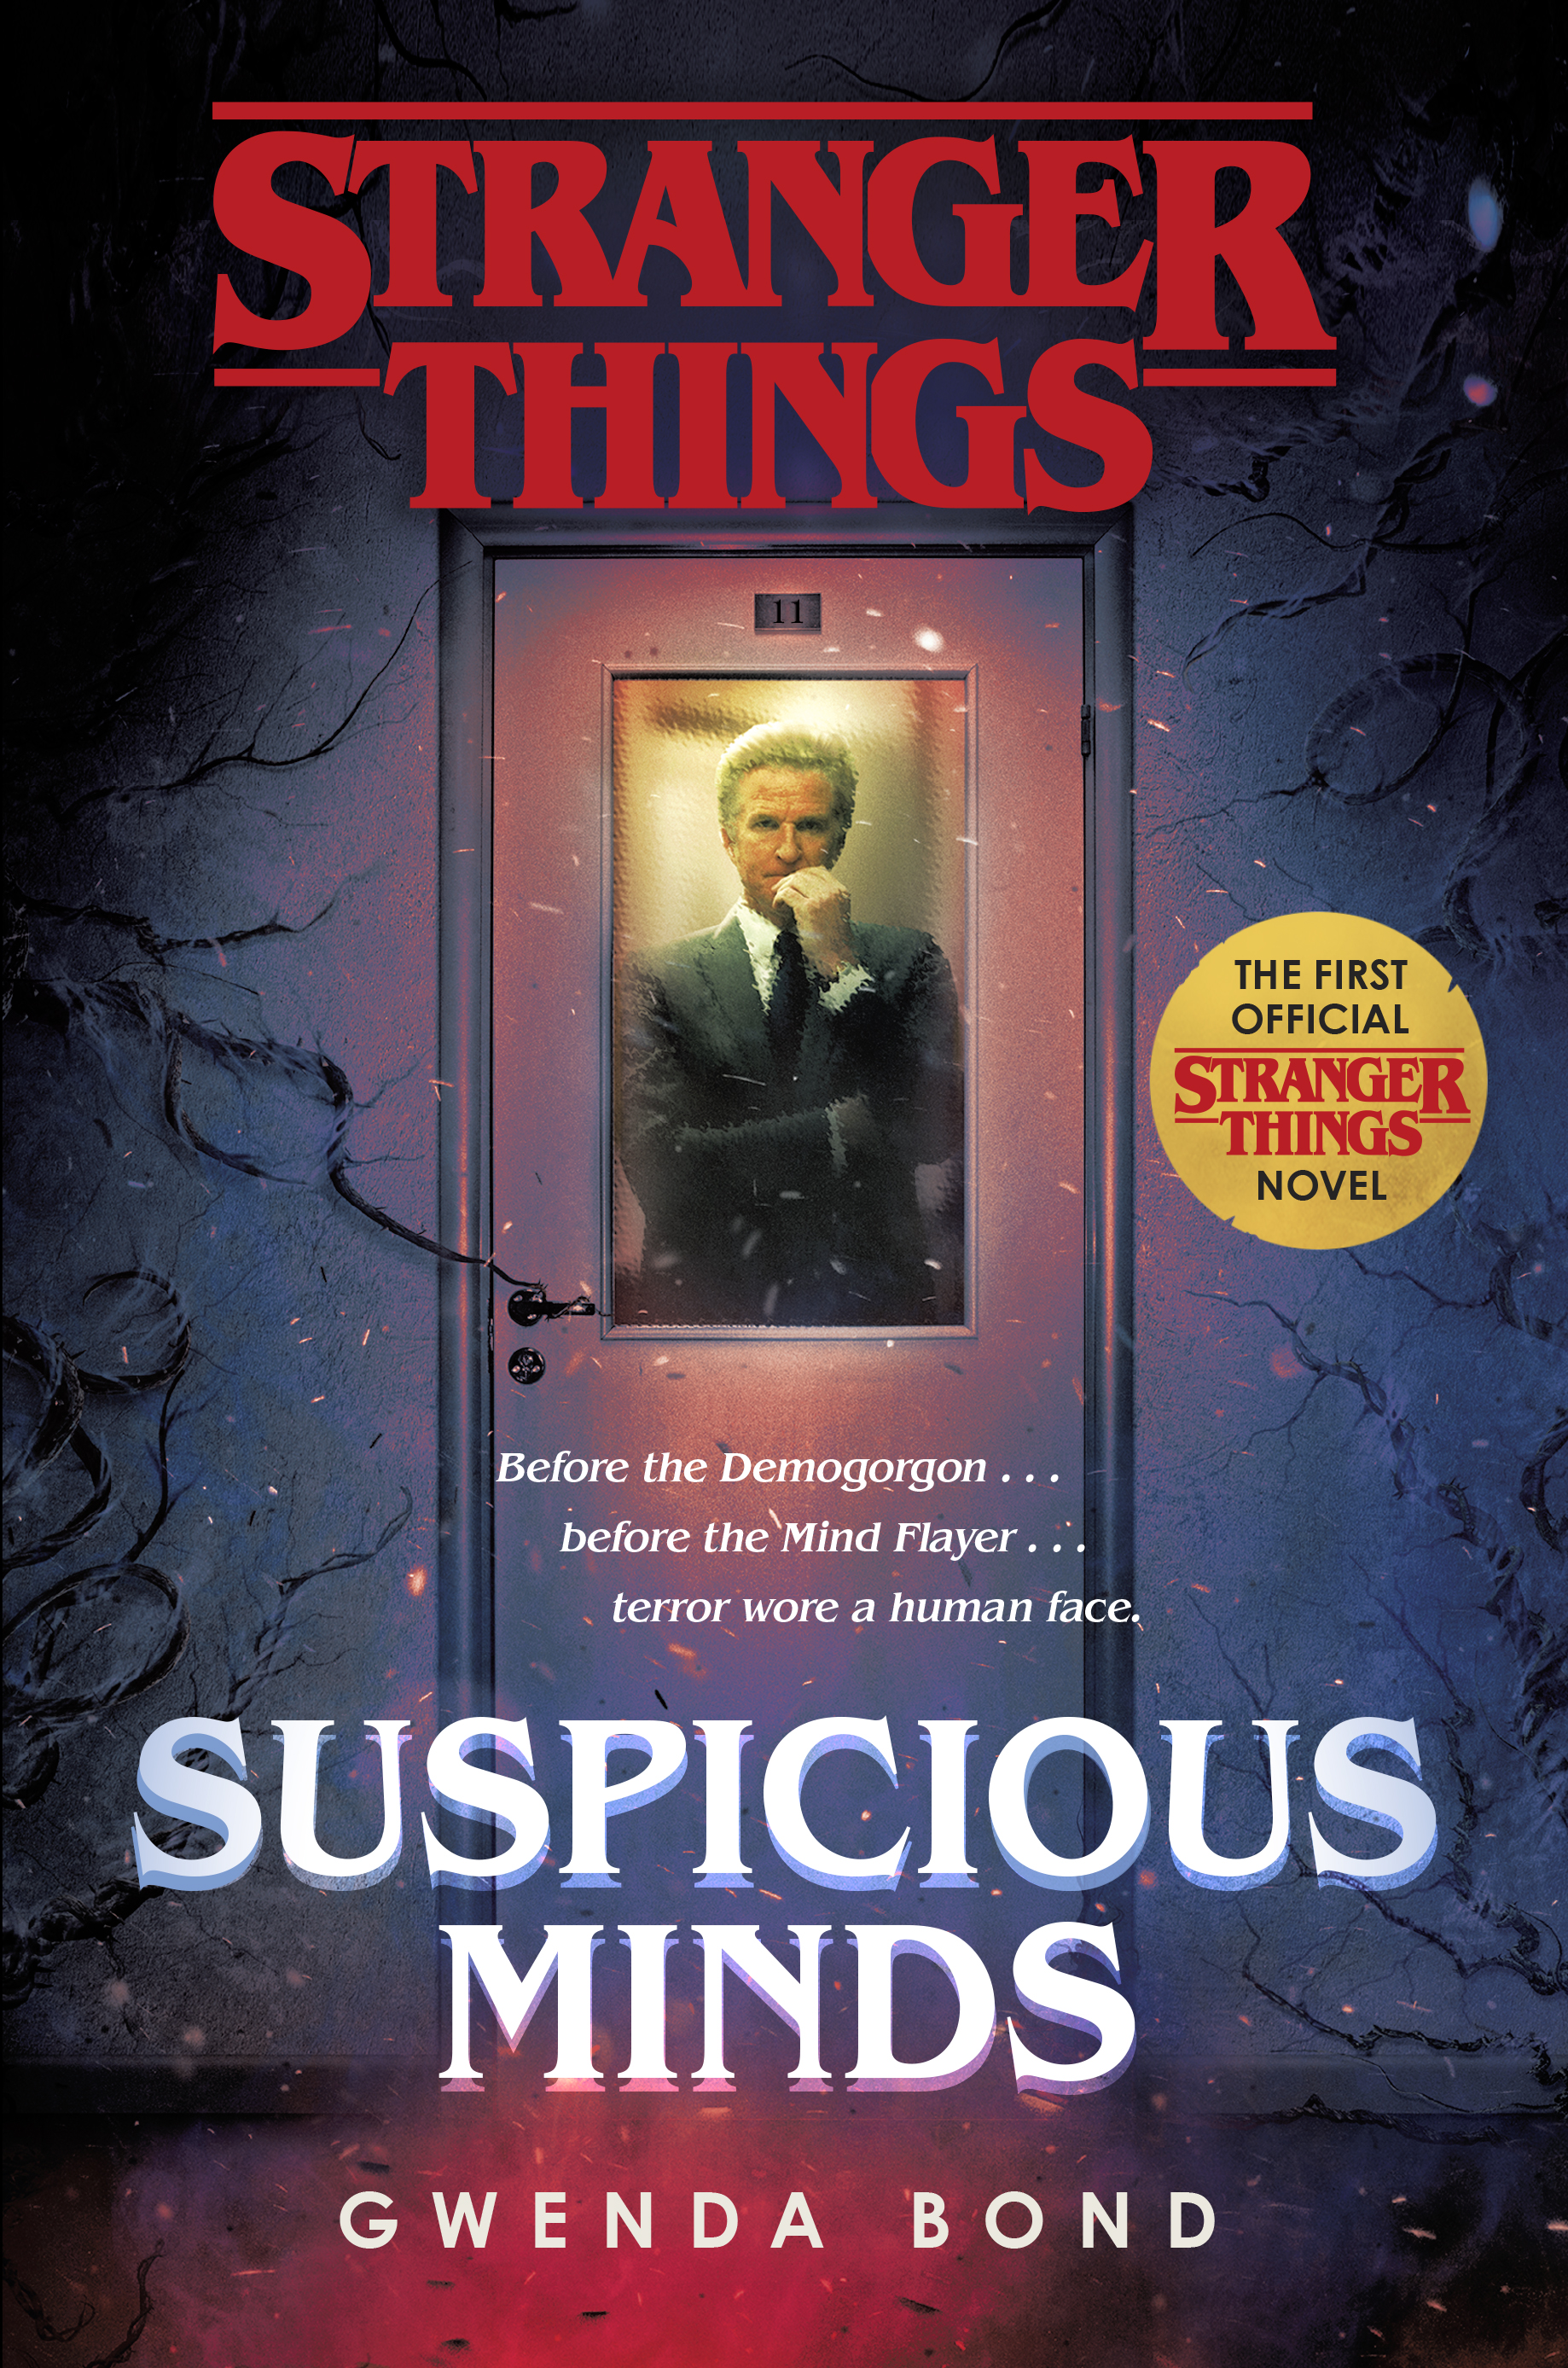 Stranger Things (season 2) - Wikipedia